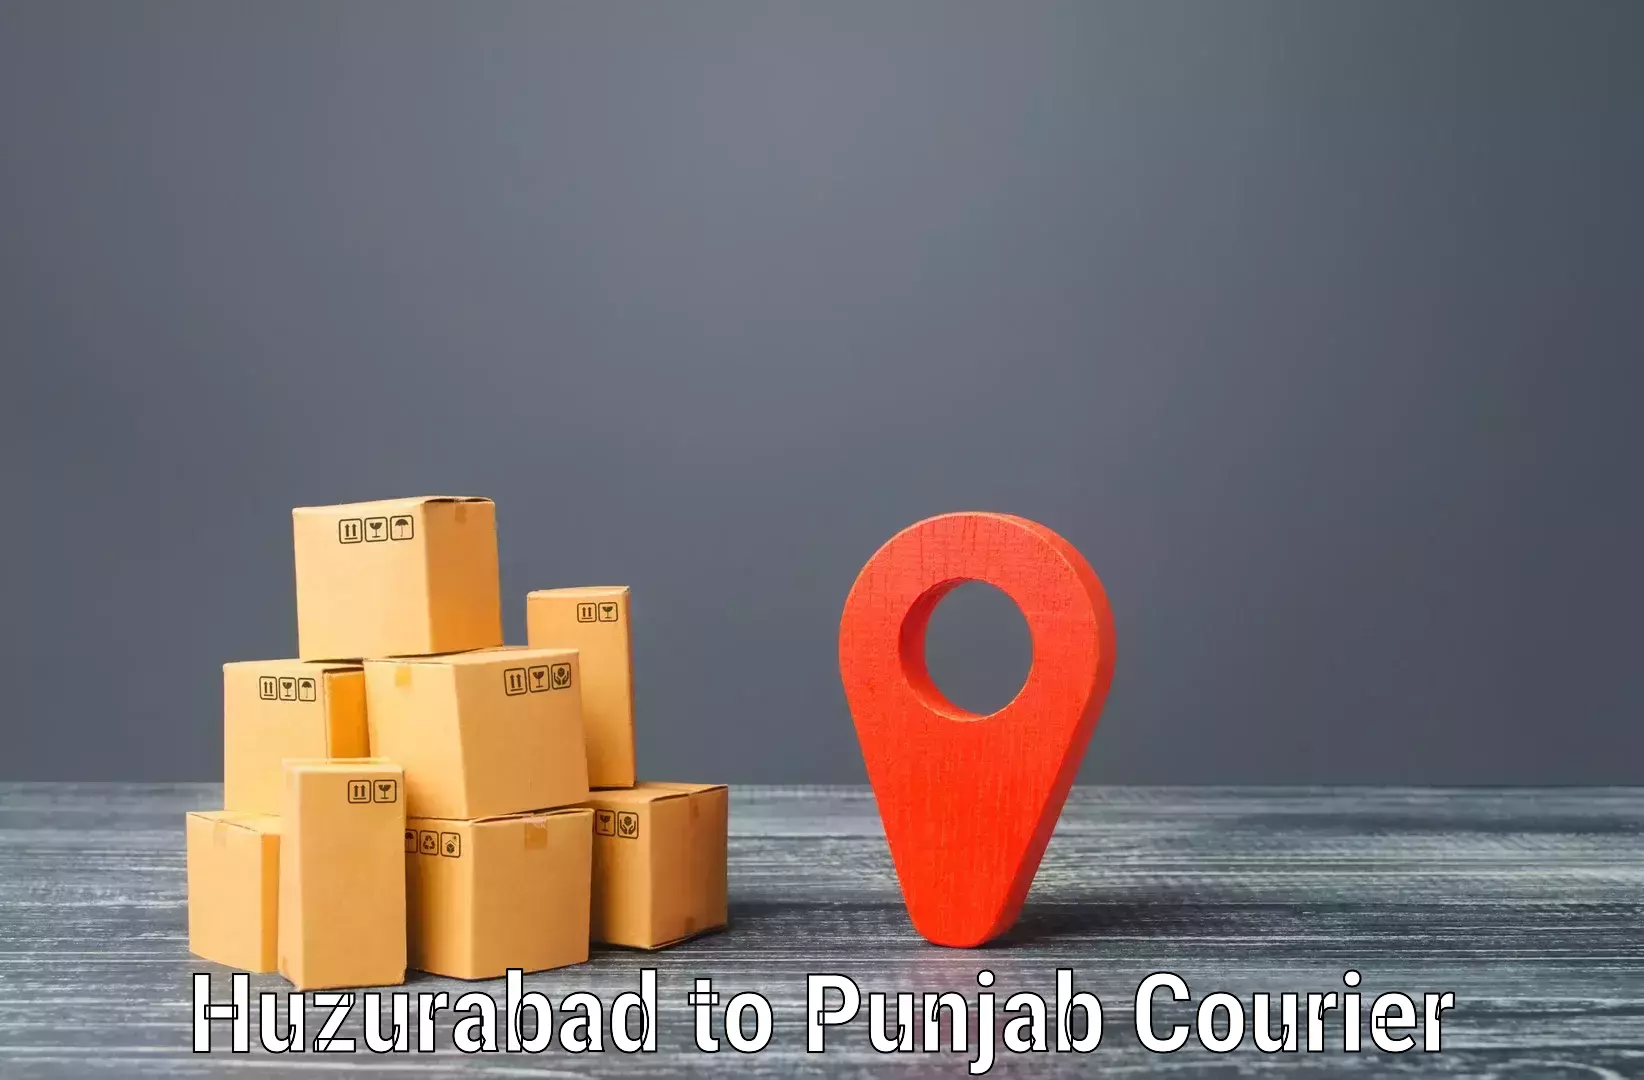 Smart courier technologies Huzurabad to Bathinda